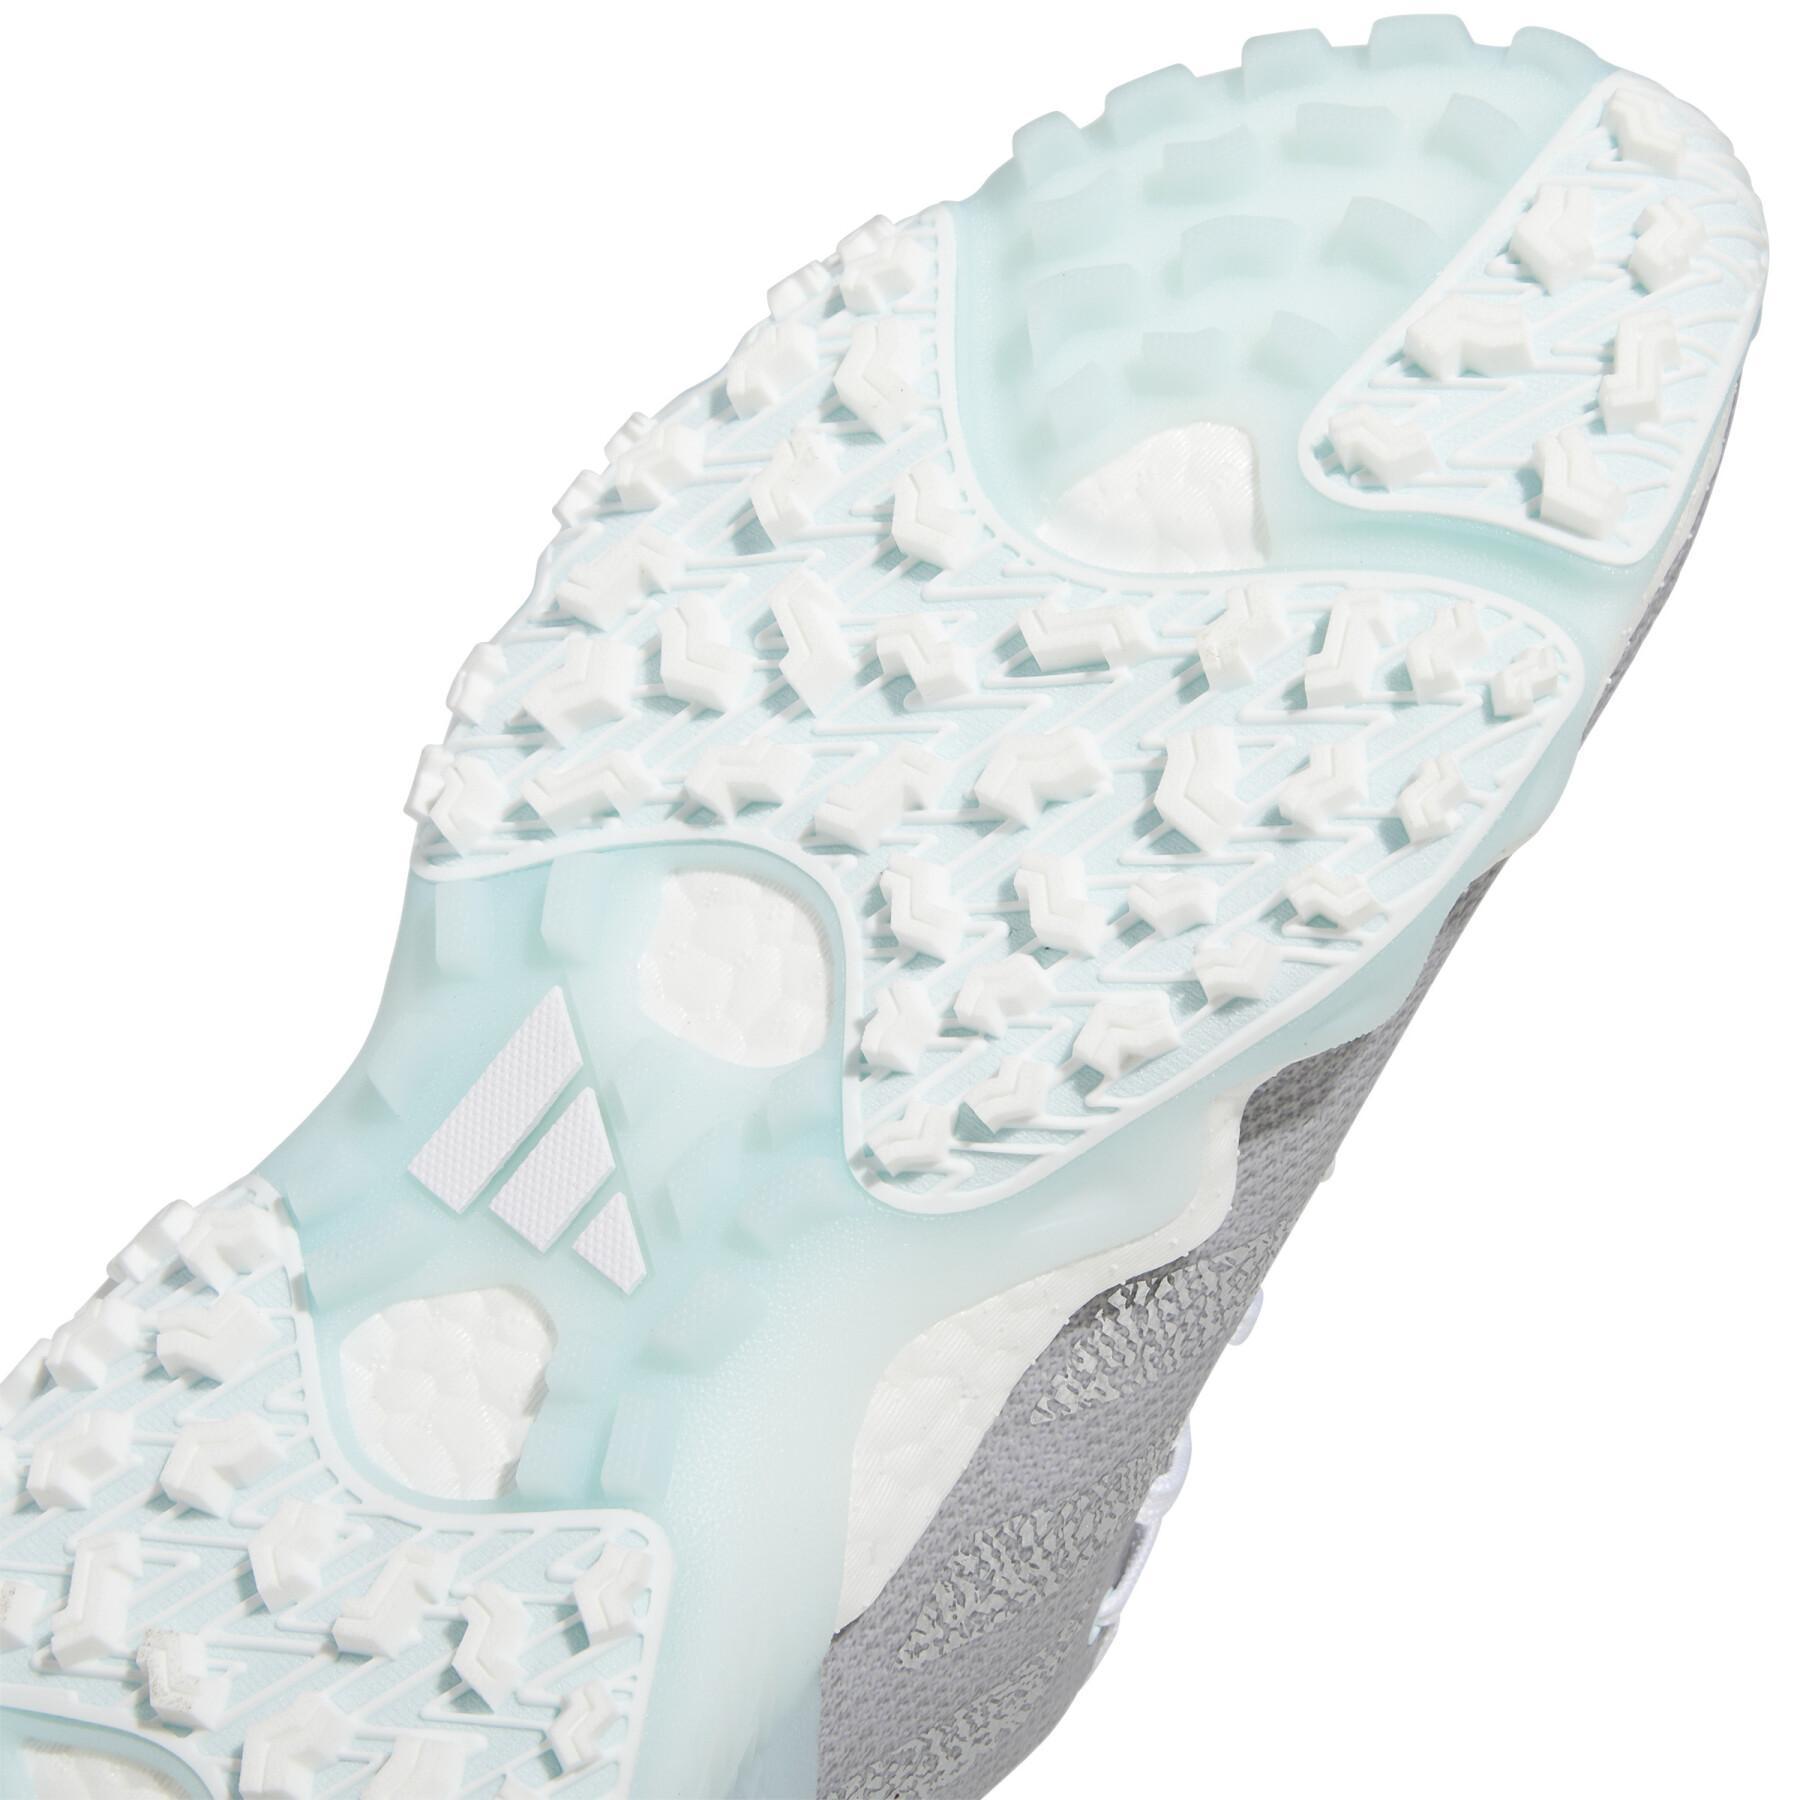 Women's spikeless golf shoes adidas Codechaos 22